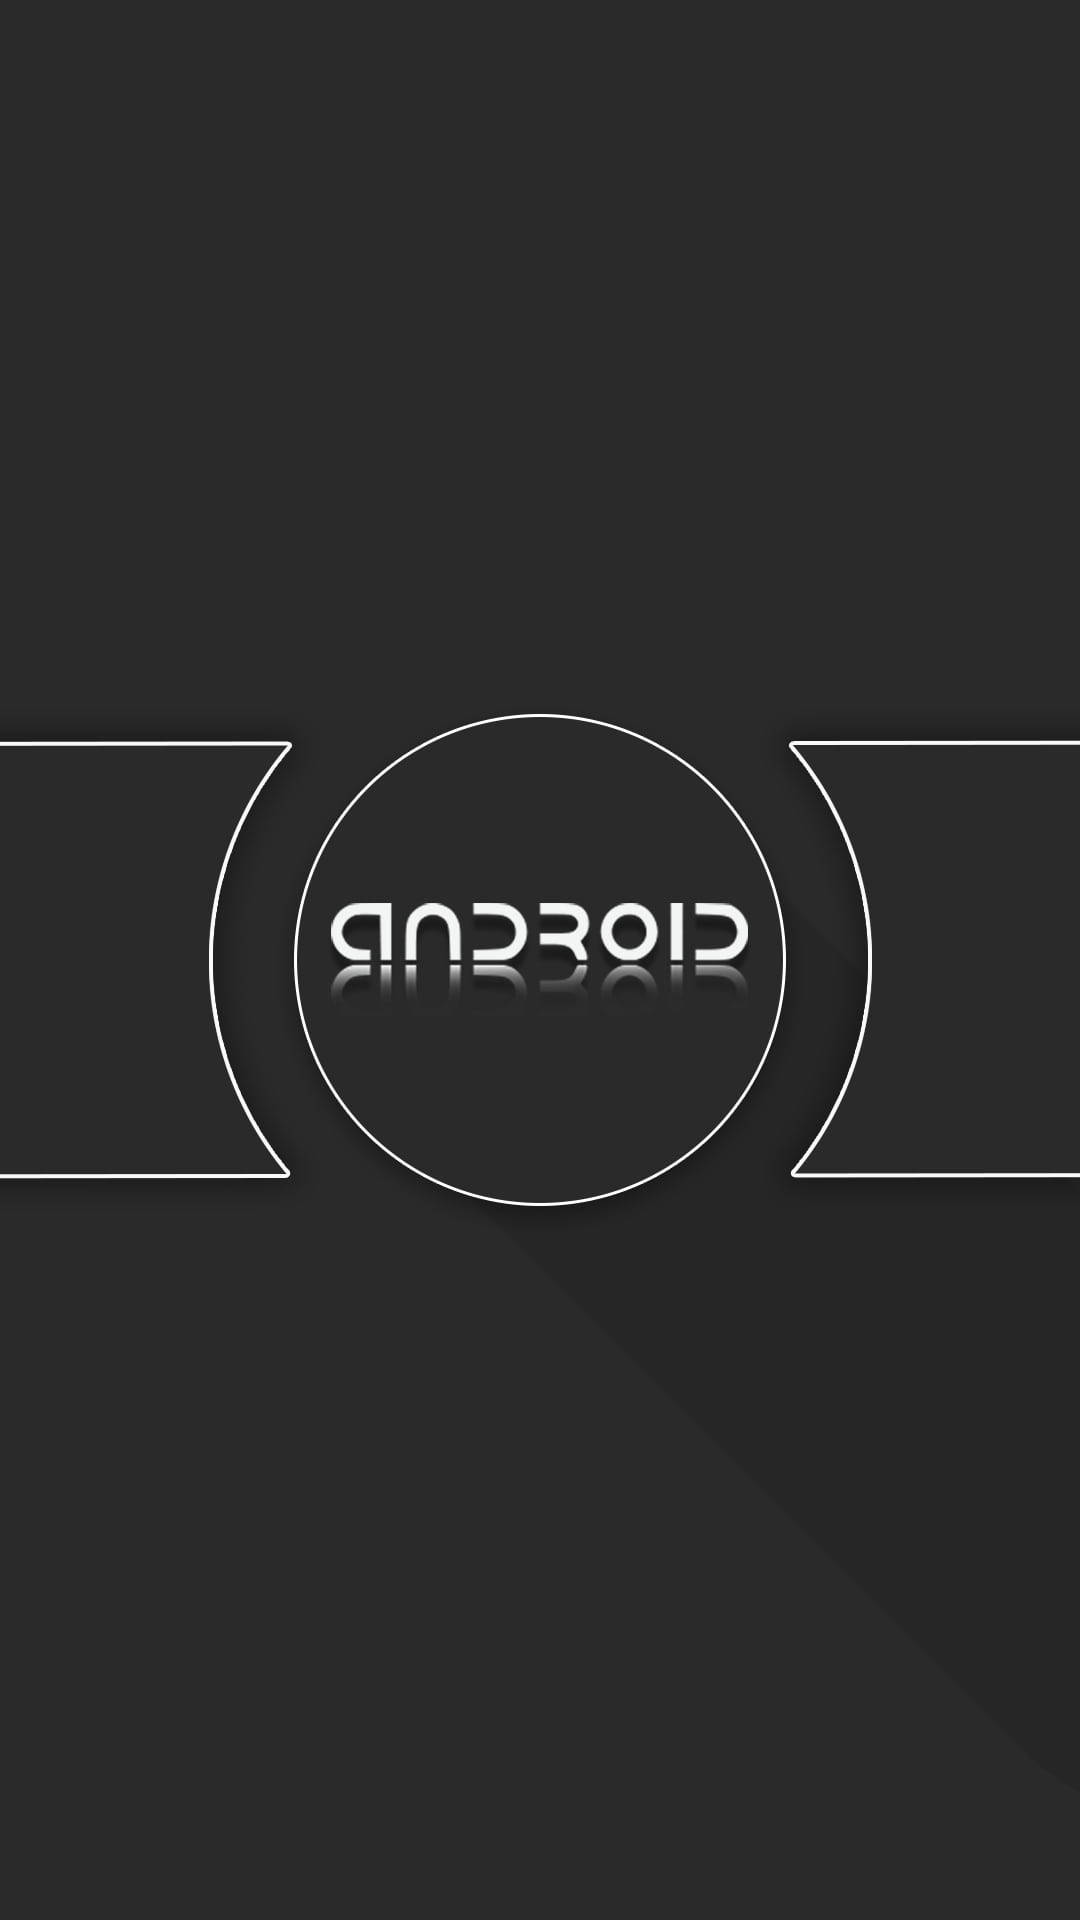 Dark Minimalist Android Background